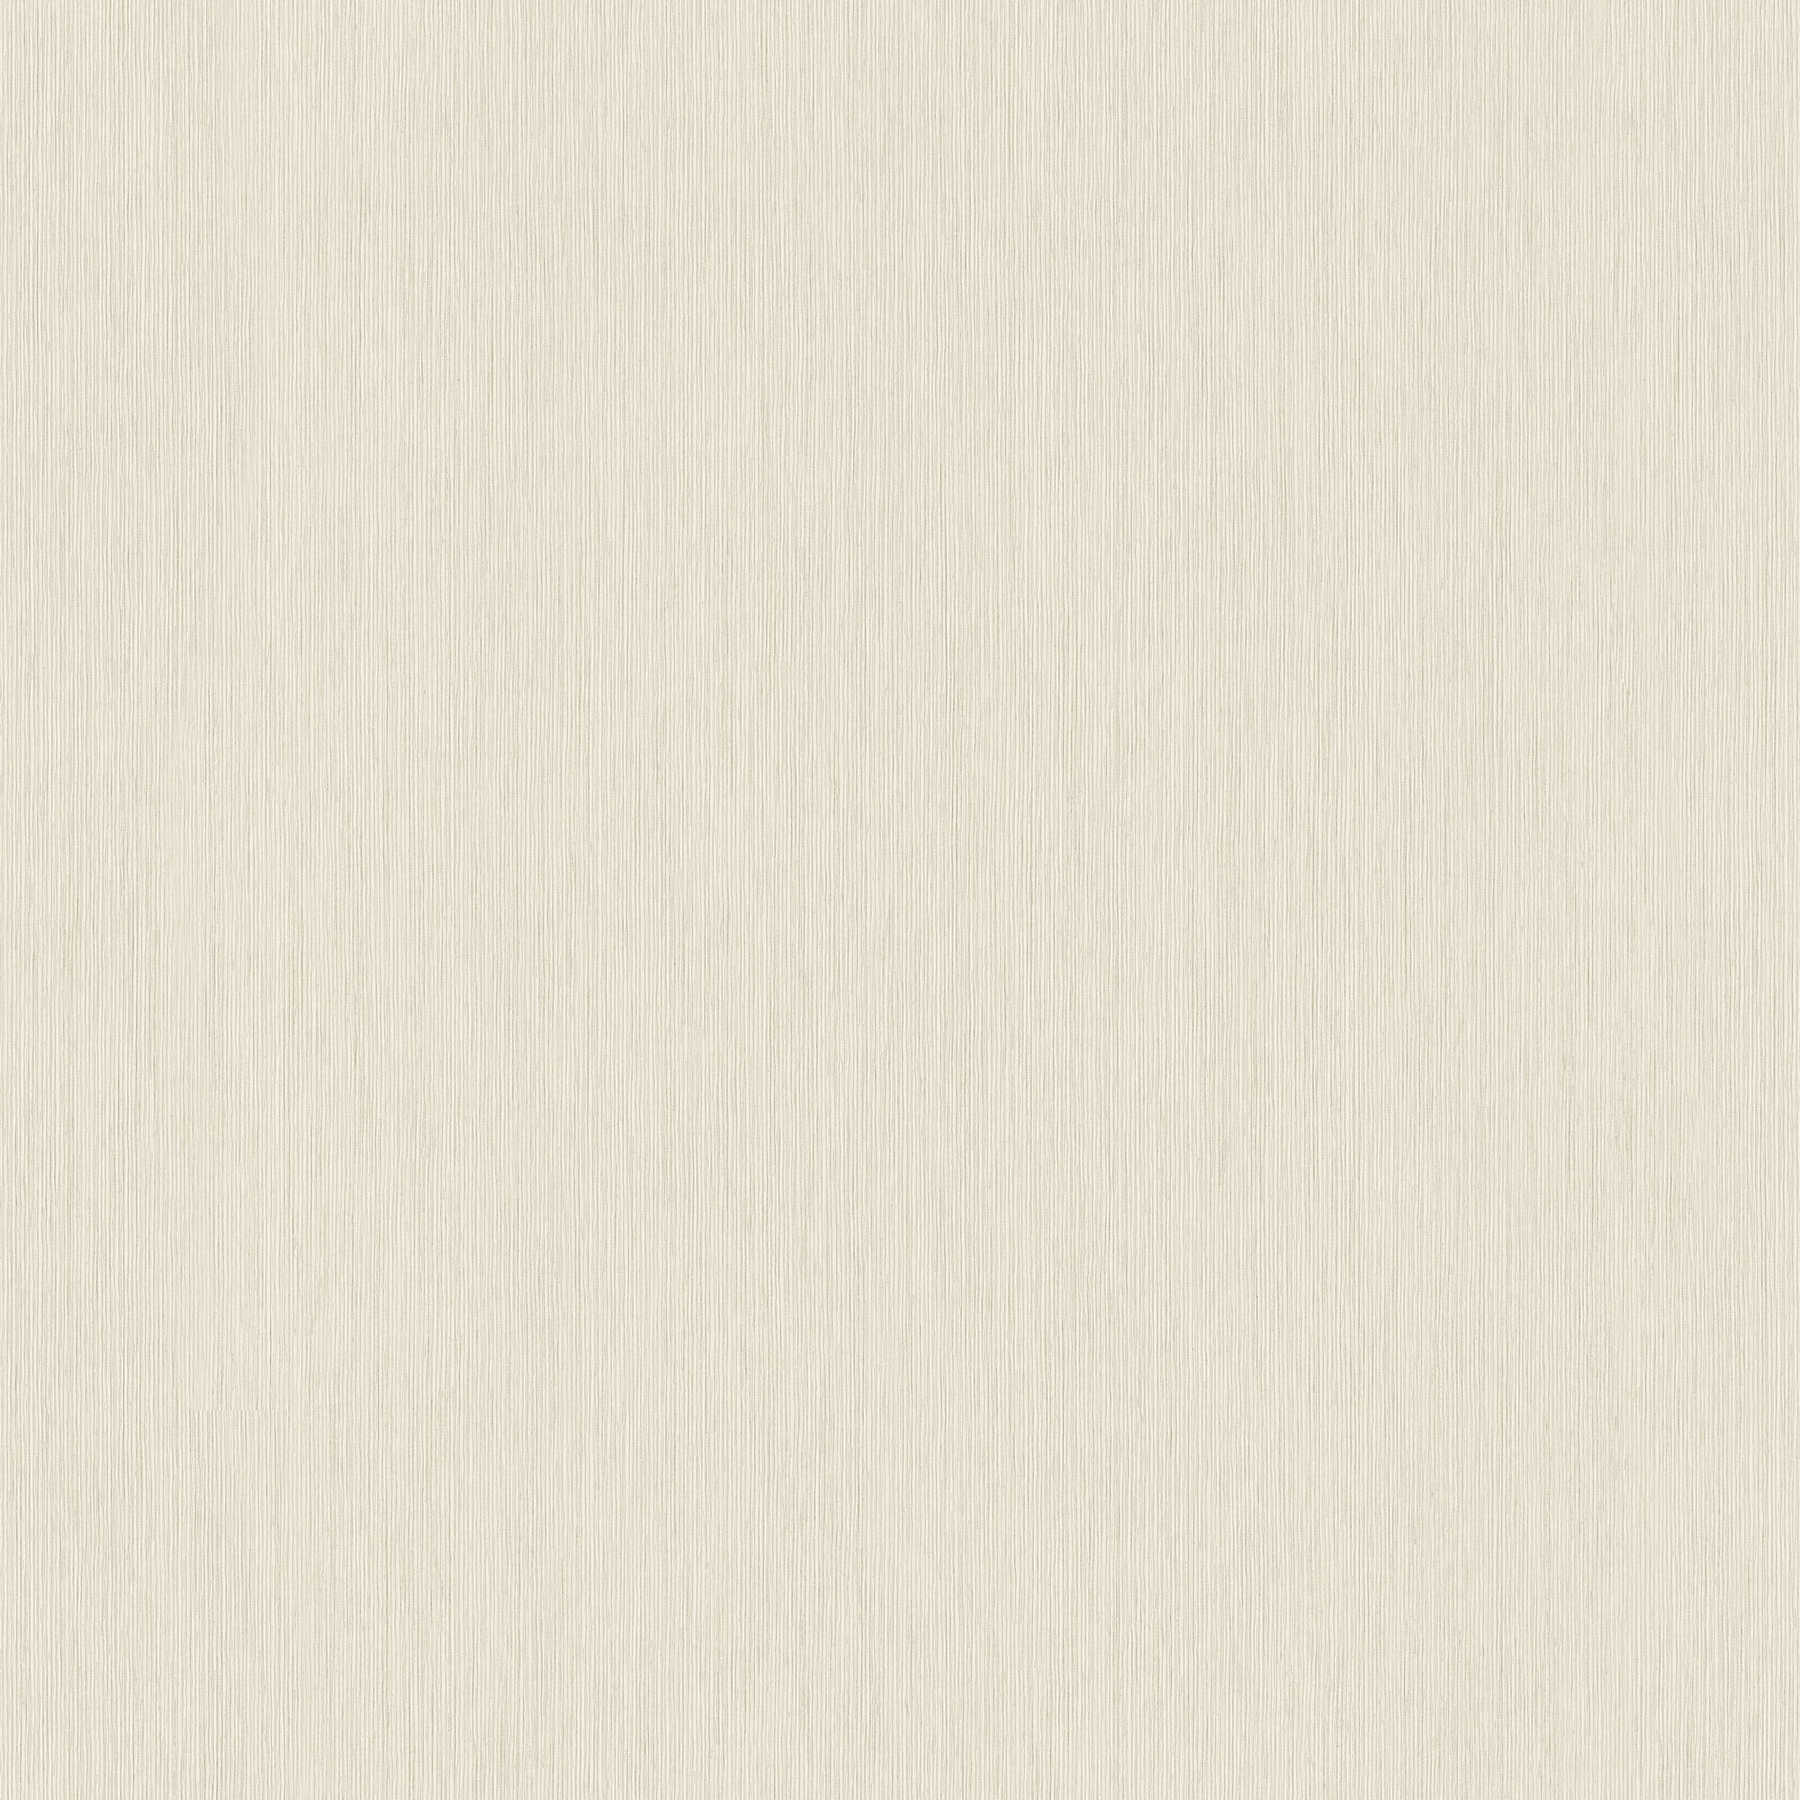 Carta da parati melange beige-grigio con struttura a rilievo foderata
